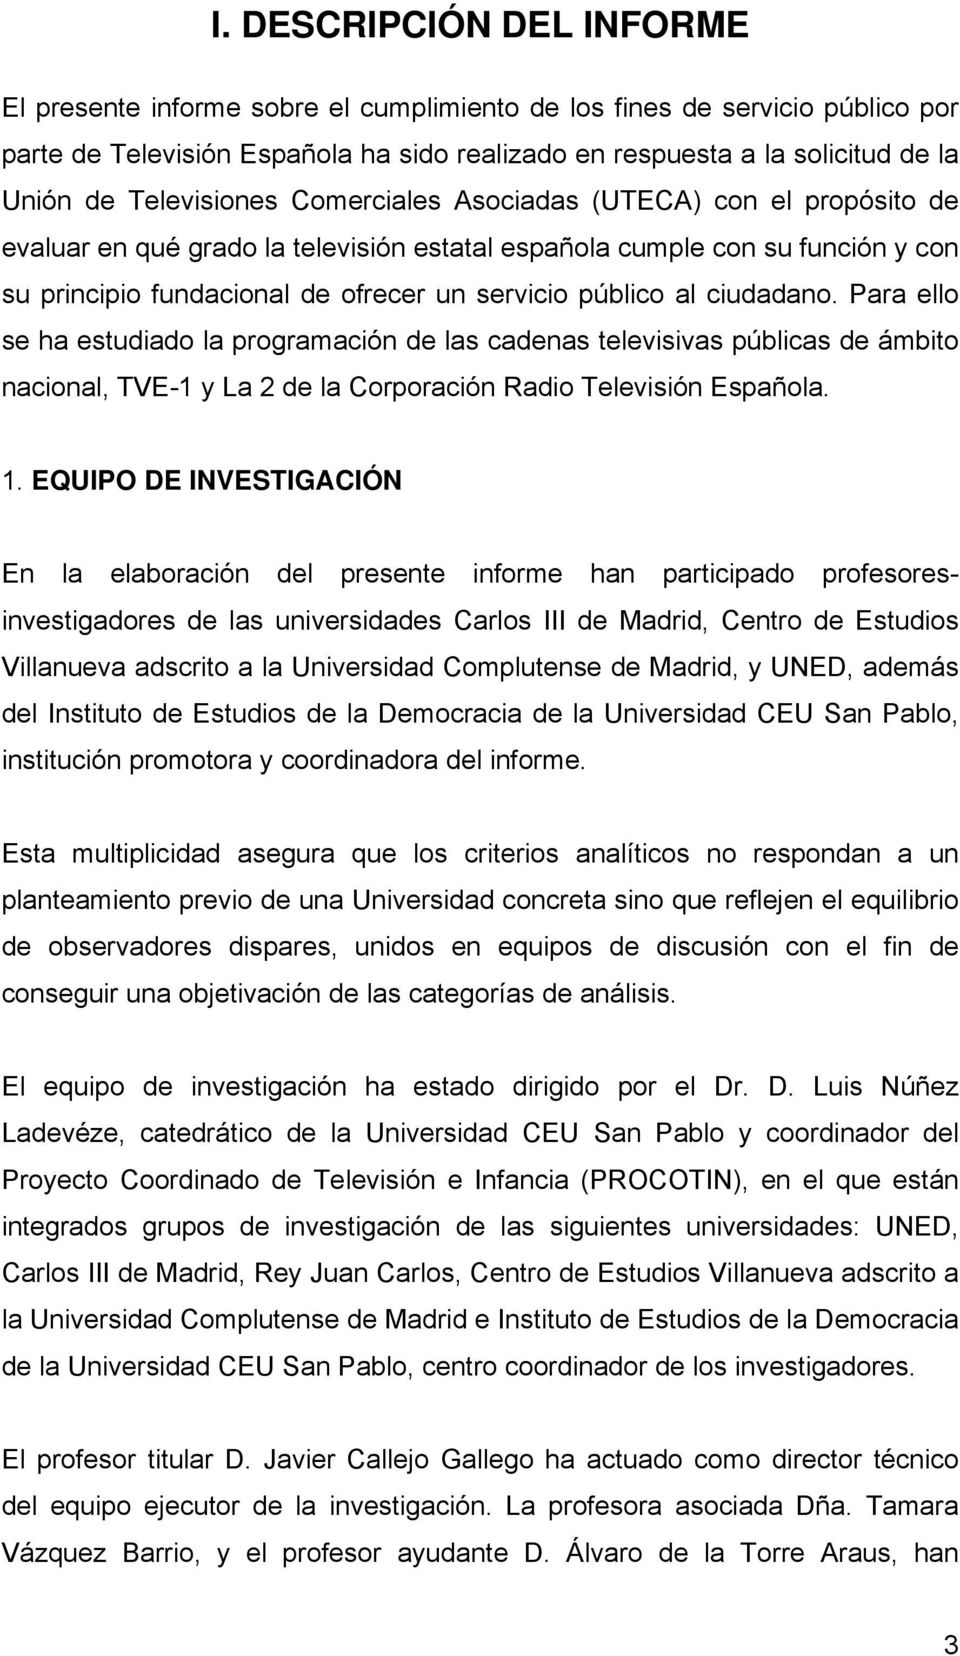 al ciudadano. Para ello se ha estudiado la programación de las cadenas televisivas públicas de ámbito nacional, TVE-1 y La 2 de la Corporación Radio Televisión Española. 1.